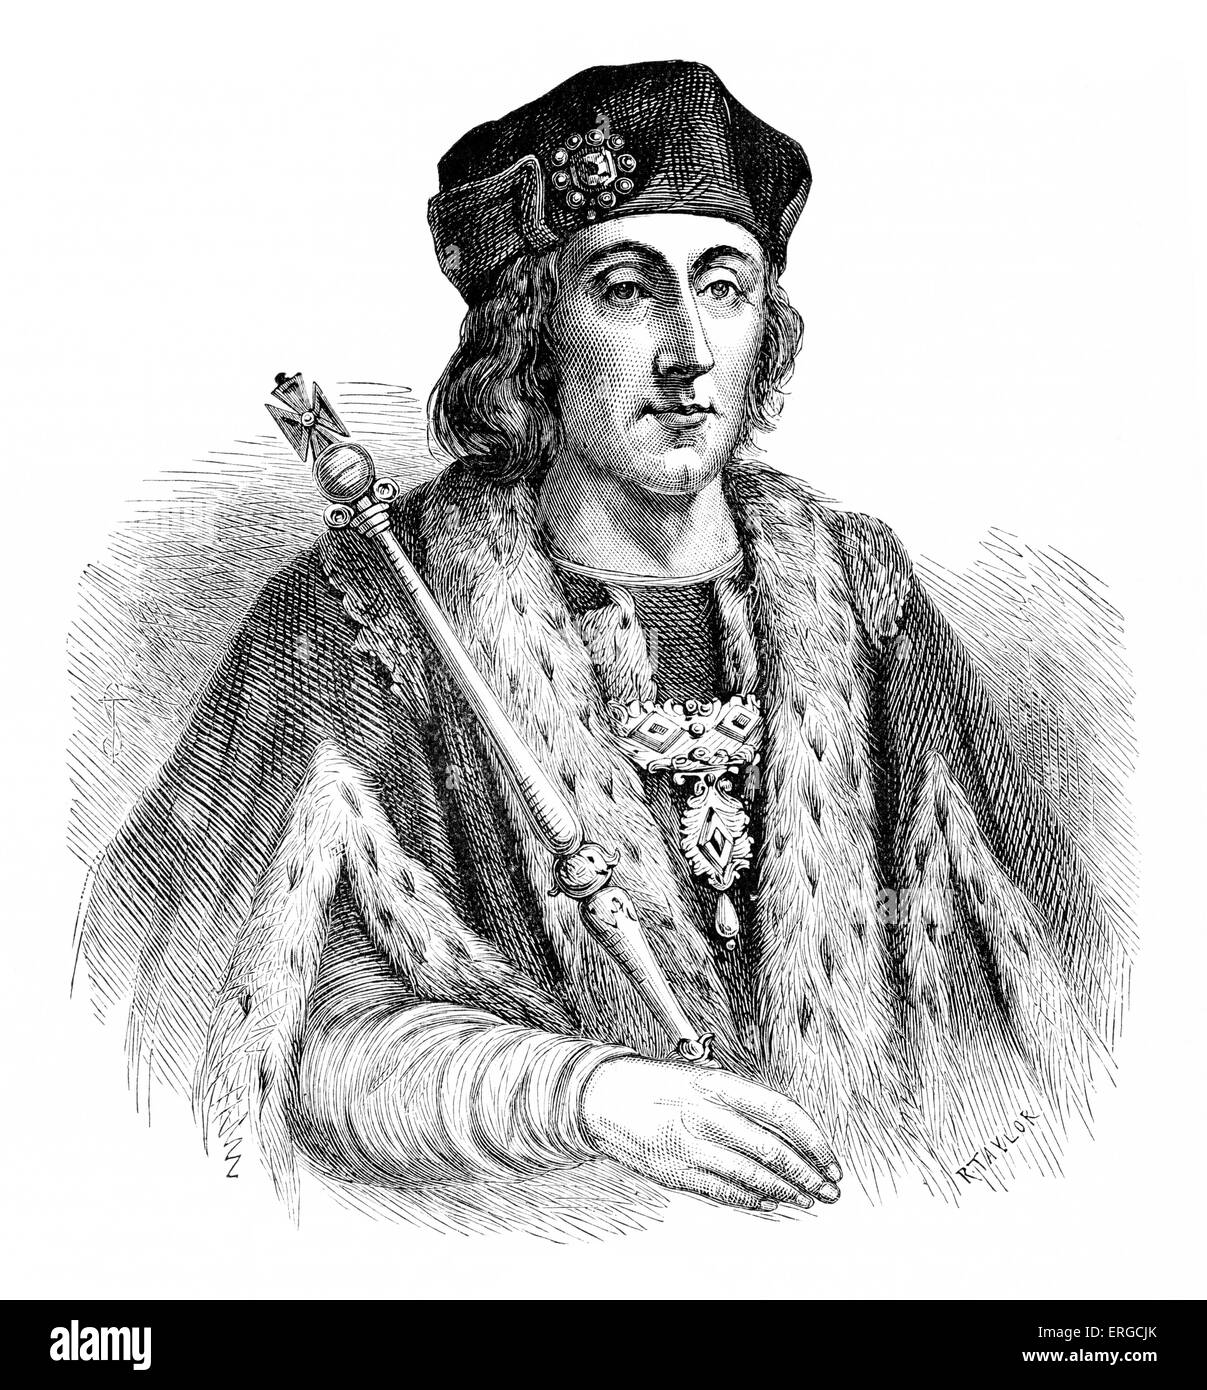 Henry VII von England - Porträt. König von England und Lord von Irland von seiner Beschlagnahme der Kronenordens am 22 August 1485 bis zu seinem Stockfoto